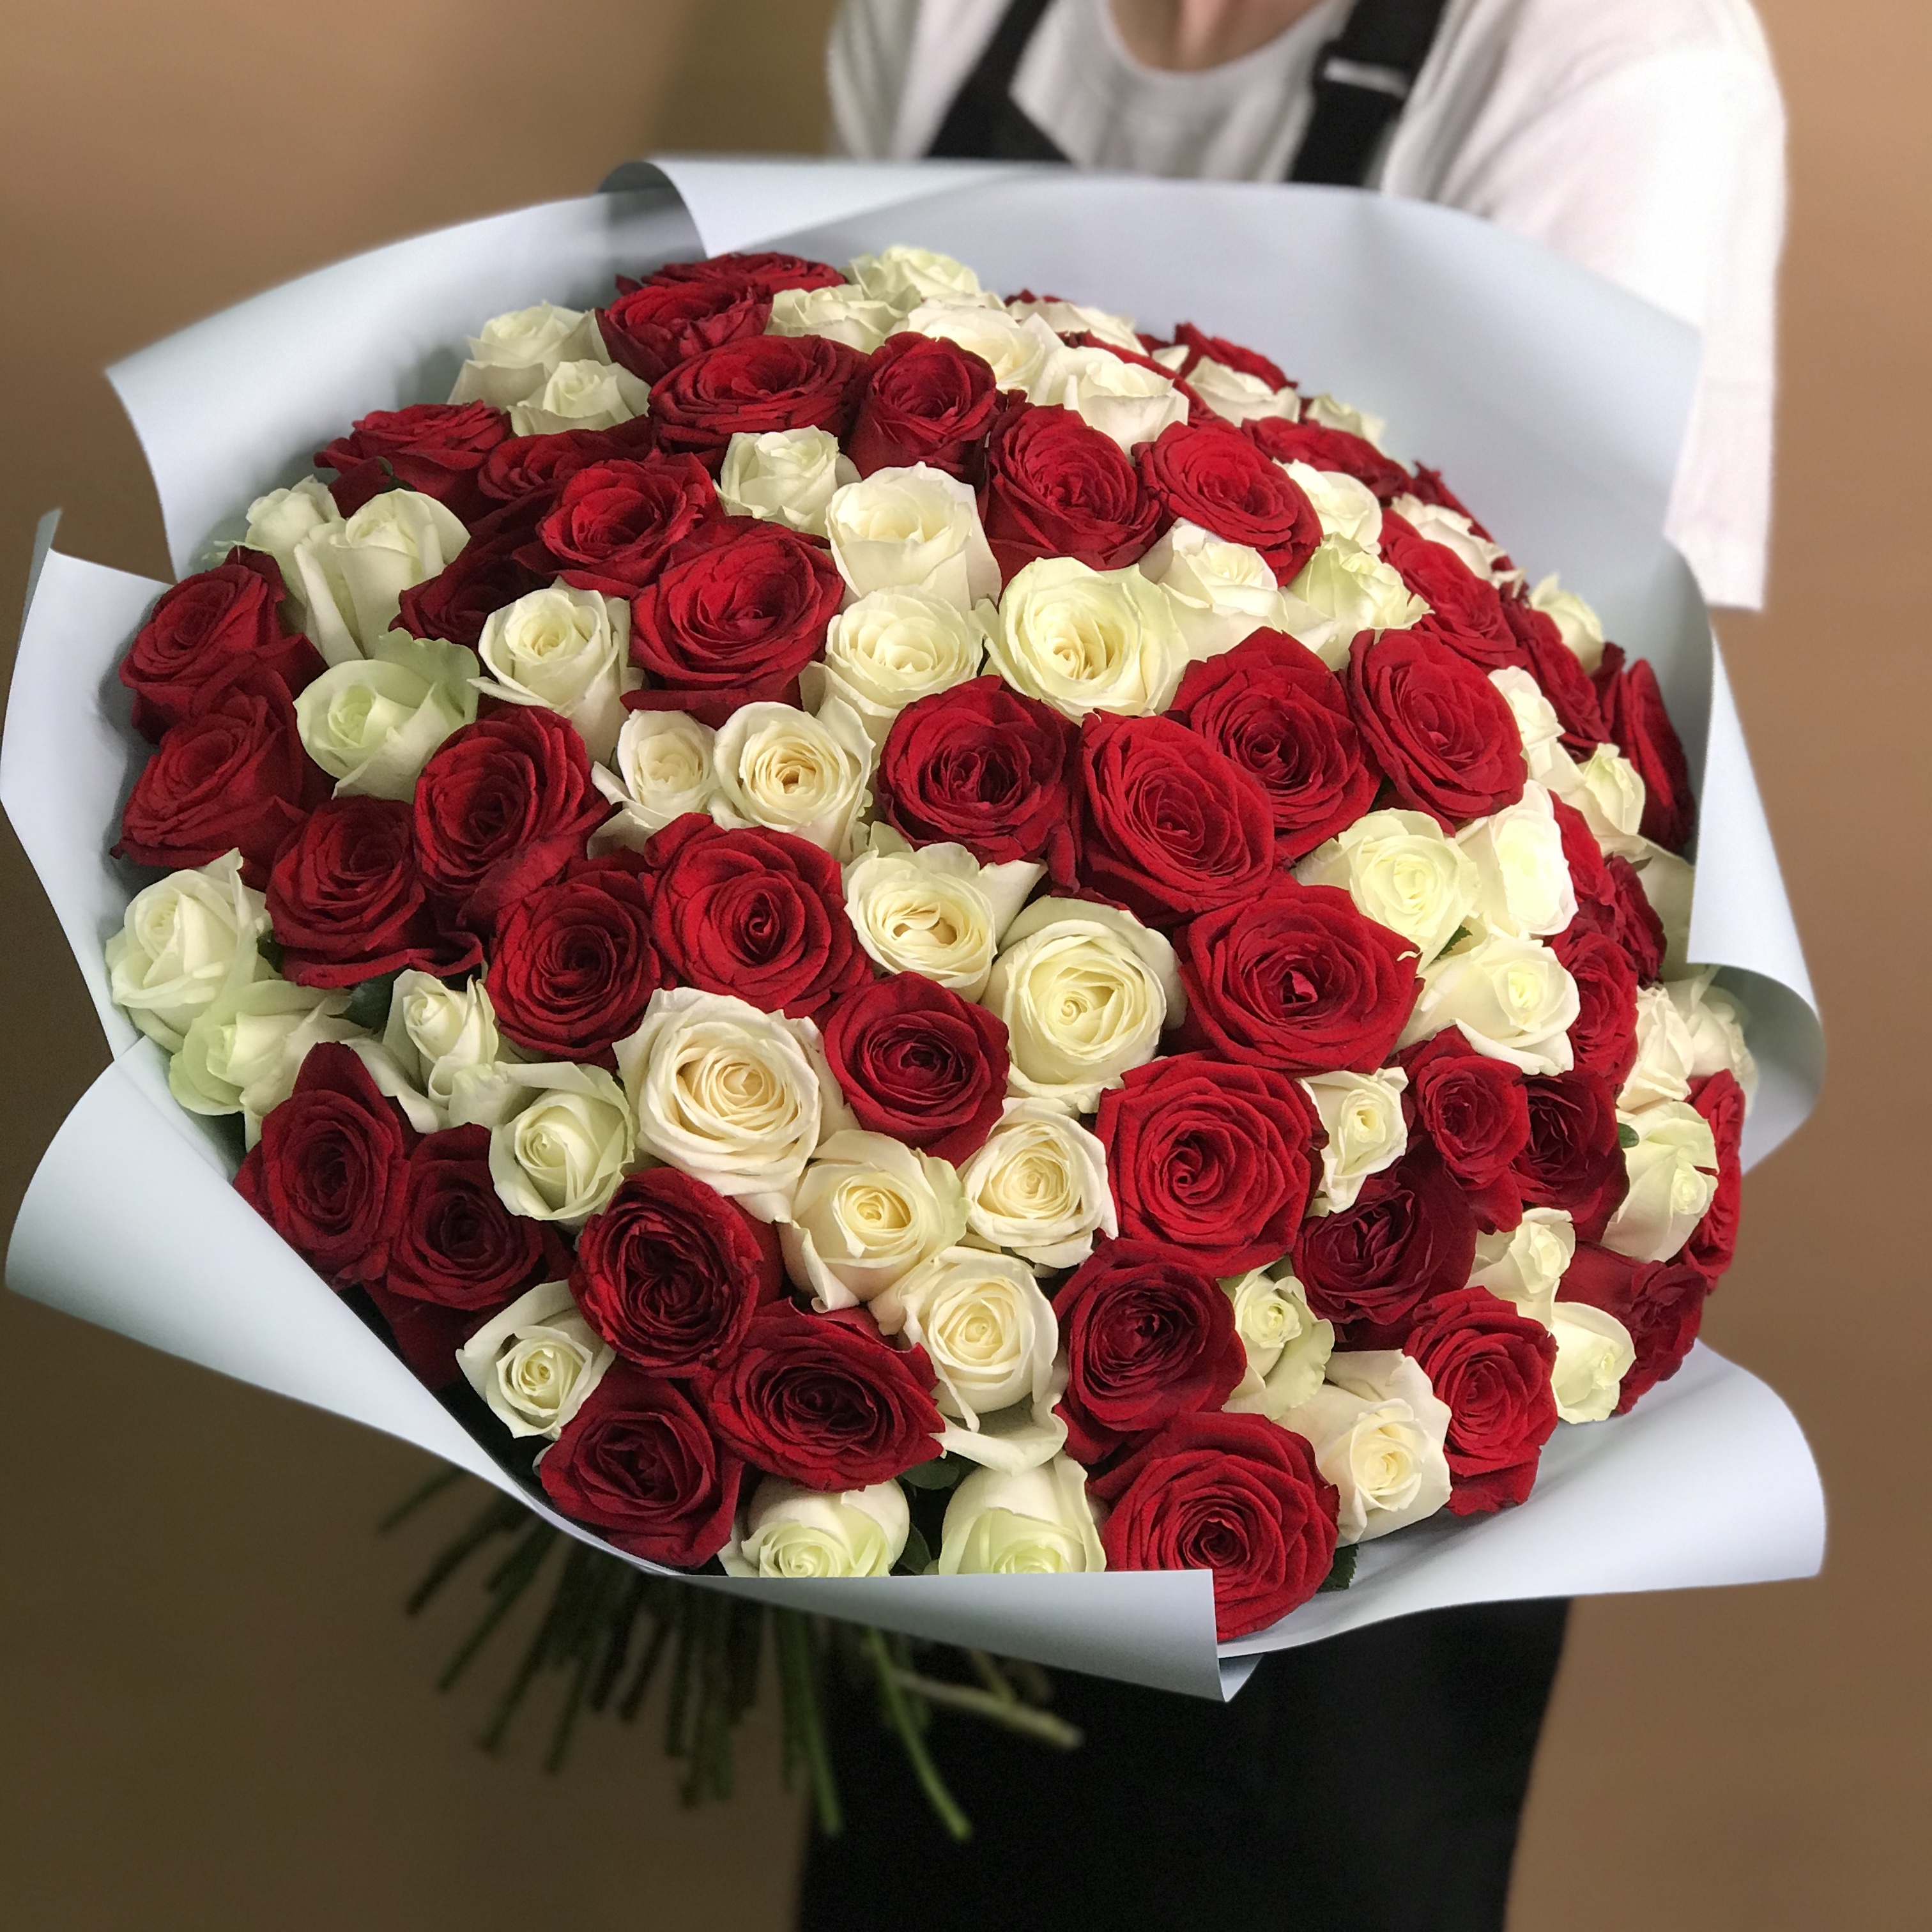 Букет из красных и белых роз 101 шт. (40 см) букет из красных и белых роз 101 шт 40 см